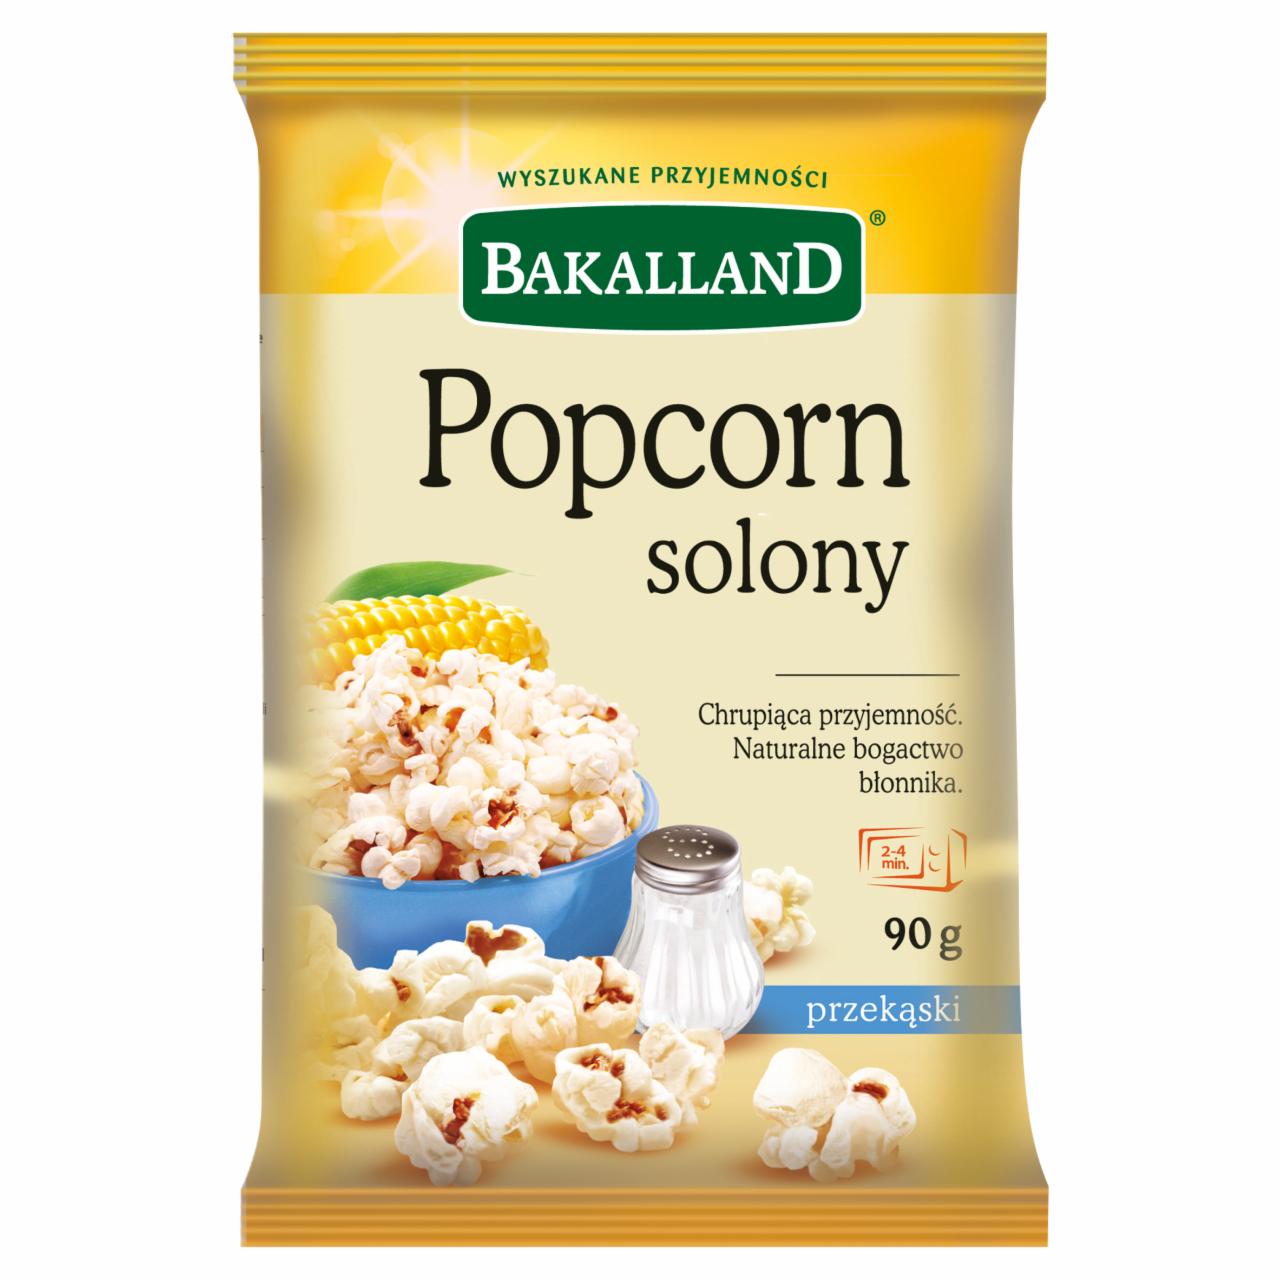 Zdjęcia - Popcorn solony Bakalland